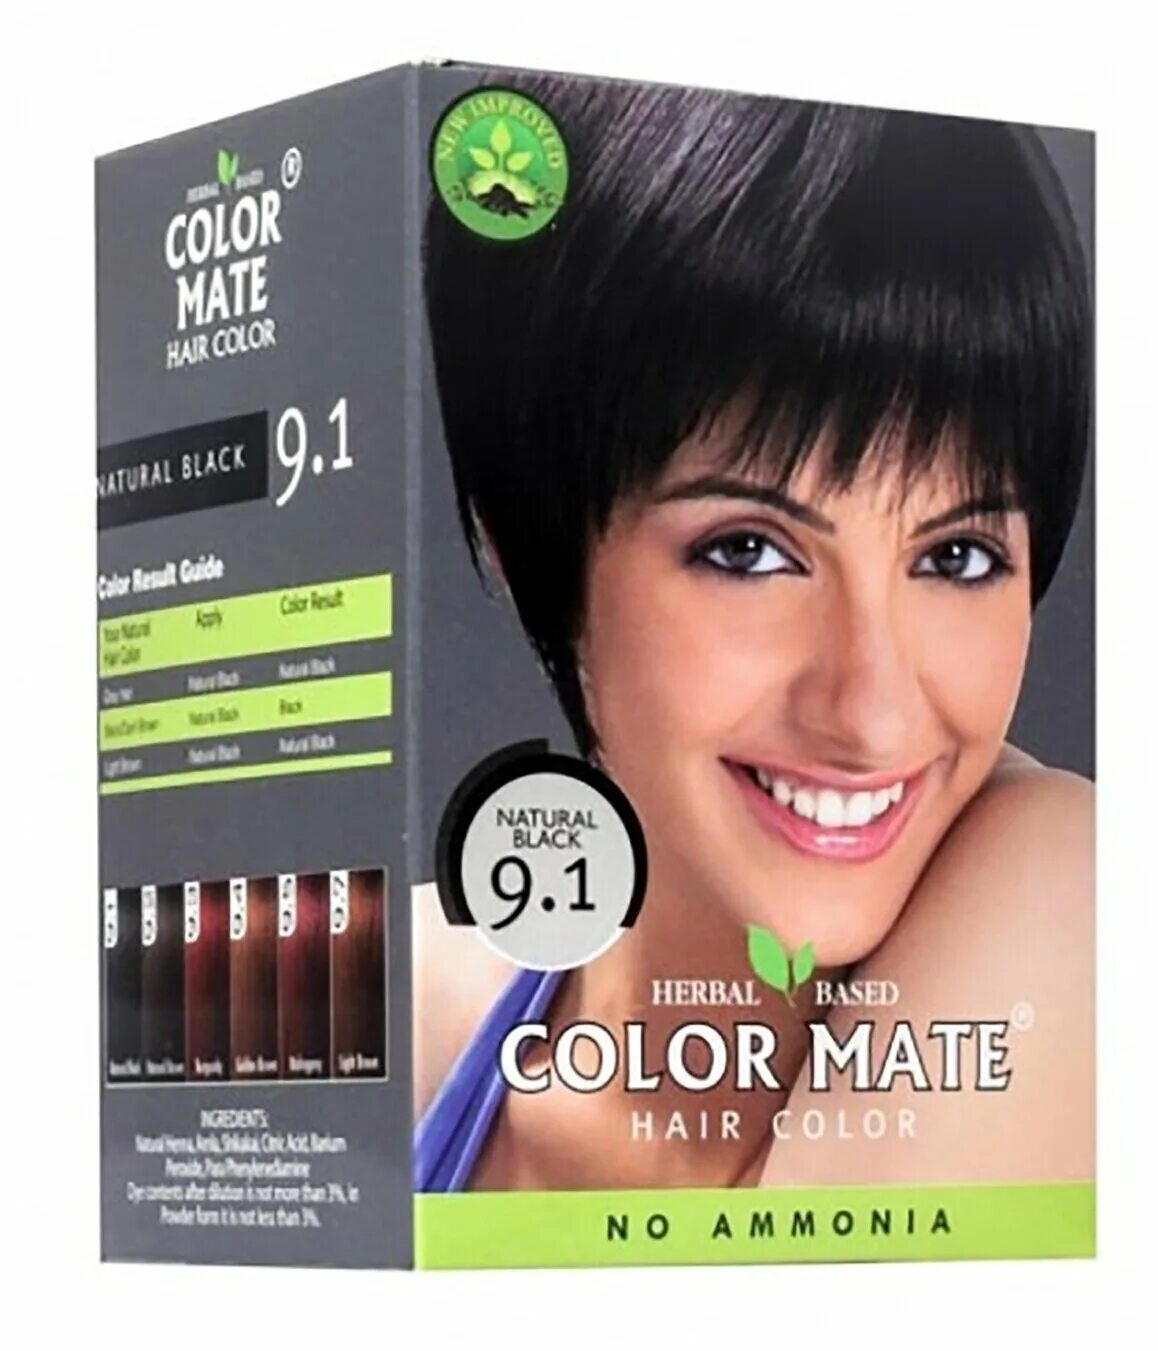 Бережная краска. Color Mate краска для волос. Колор мате 9.5 краска для волос. Травяная краска для волос Color Mate hair Color 75 гр (5*15) натуральный черный. Краска для волос Color Mate 9.2 натуральный.